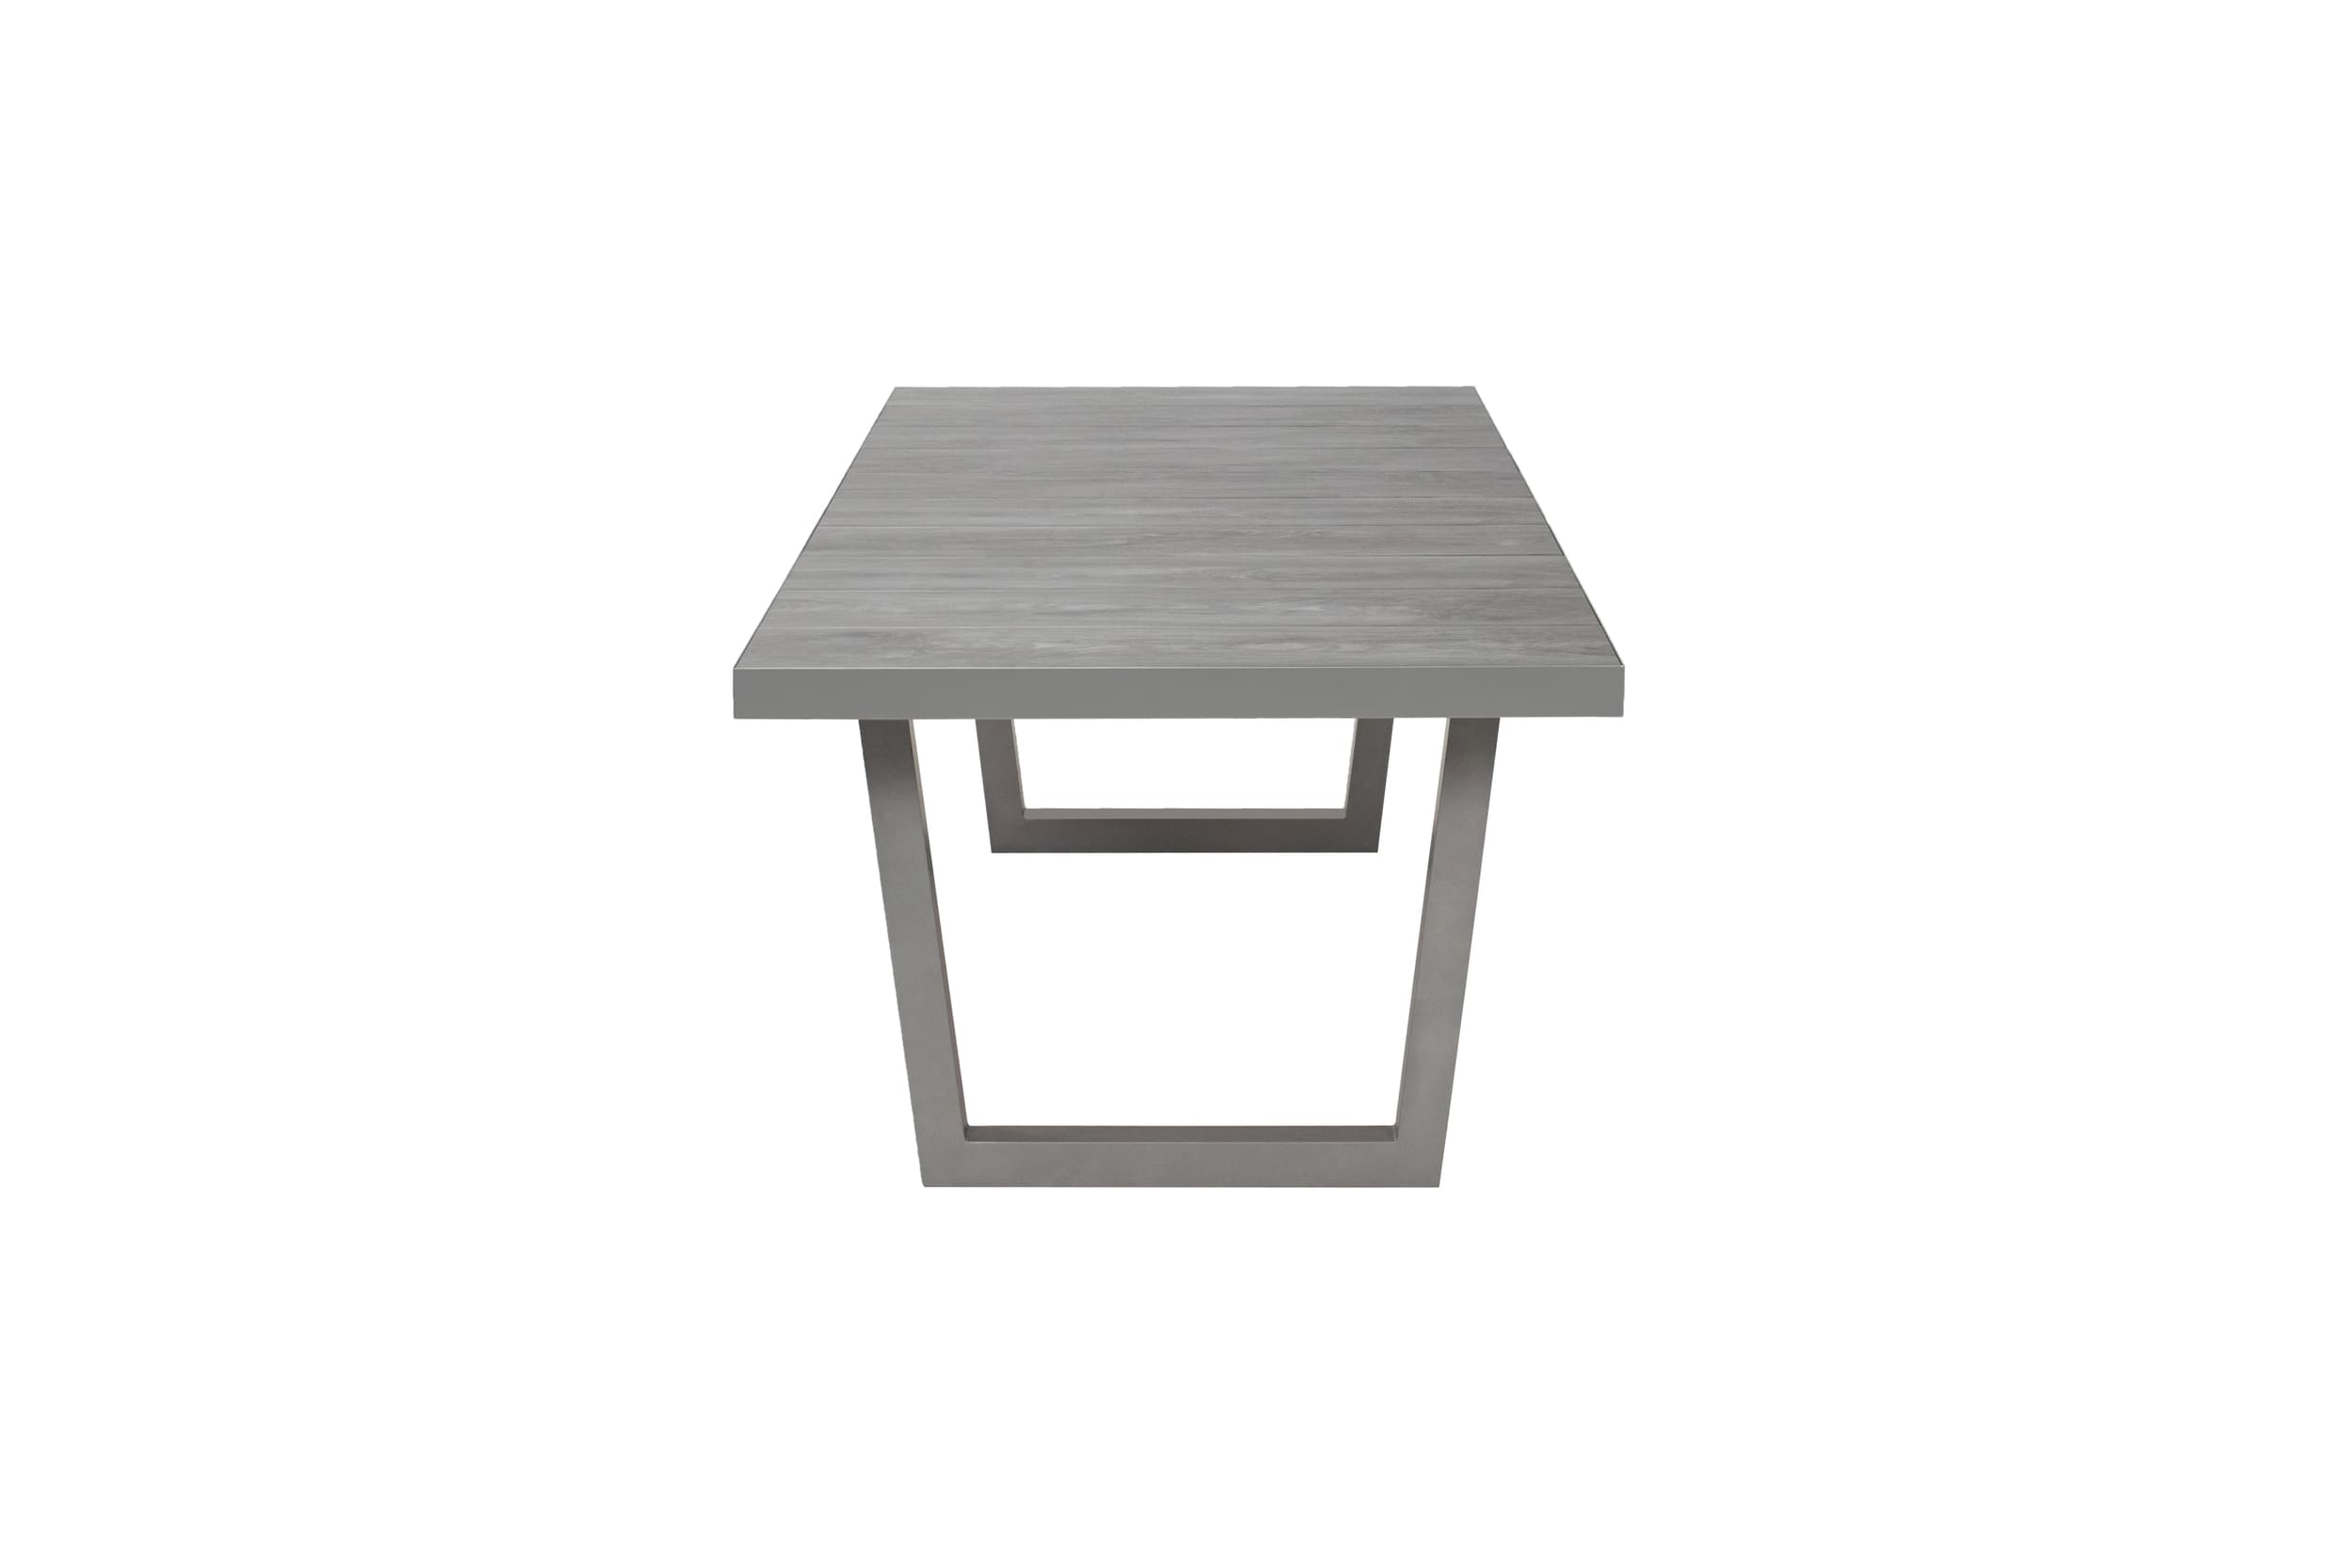 LC grau mit 200x100x75cm Tischplatte »Bondino« Gartentisch Garden silber V-Fuß Keramik Dining